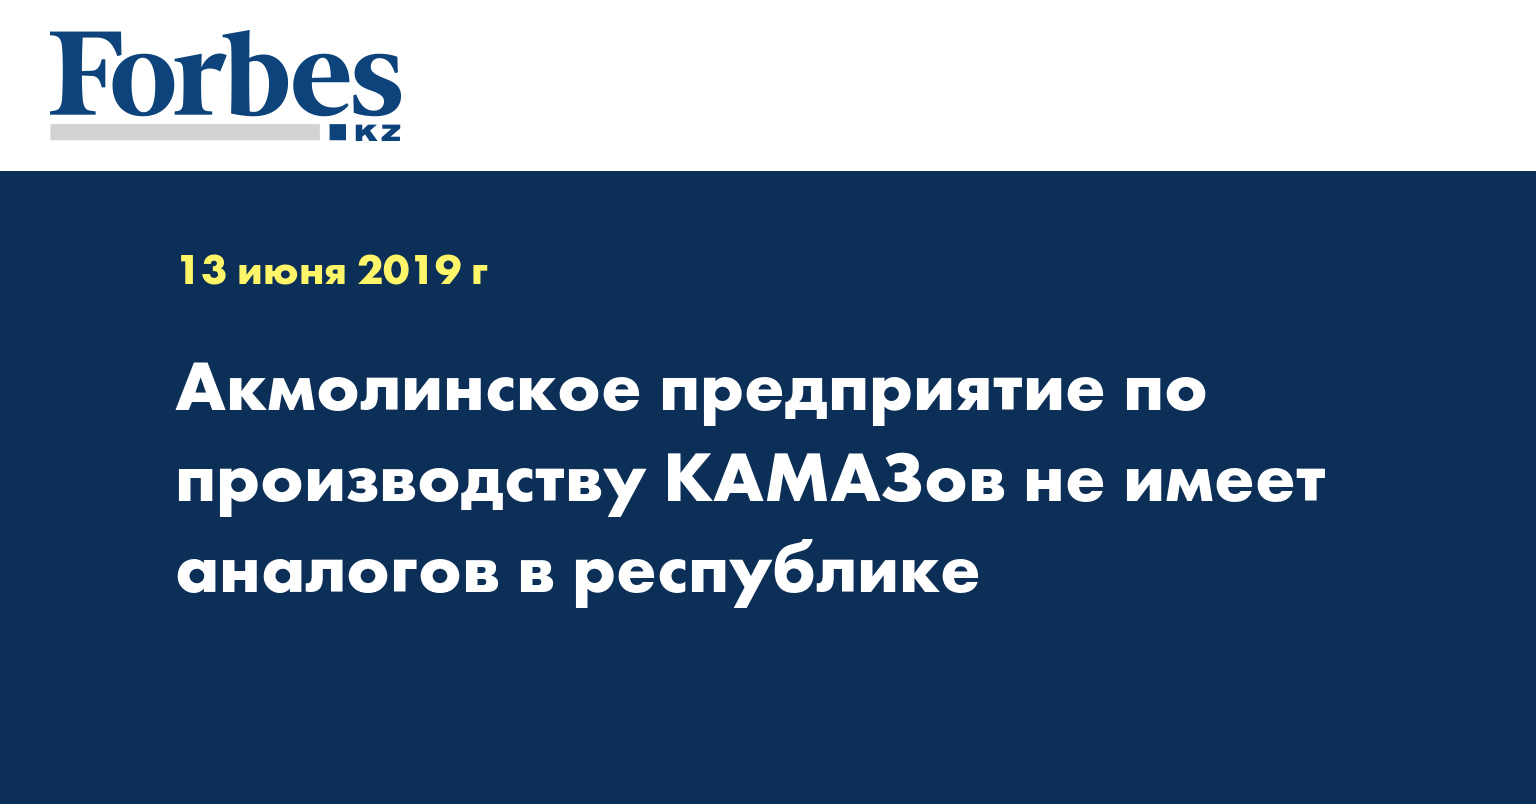 Акмолинское предприятие по производству КАМАЗов не имеет аналогов в республике